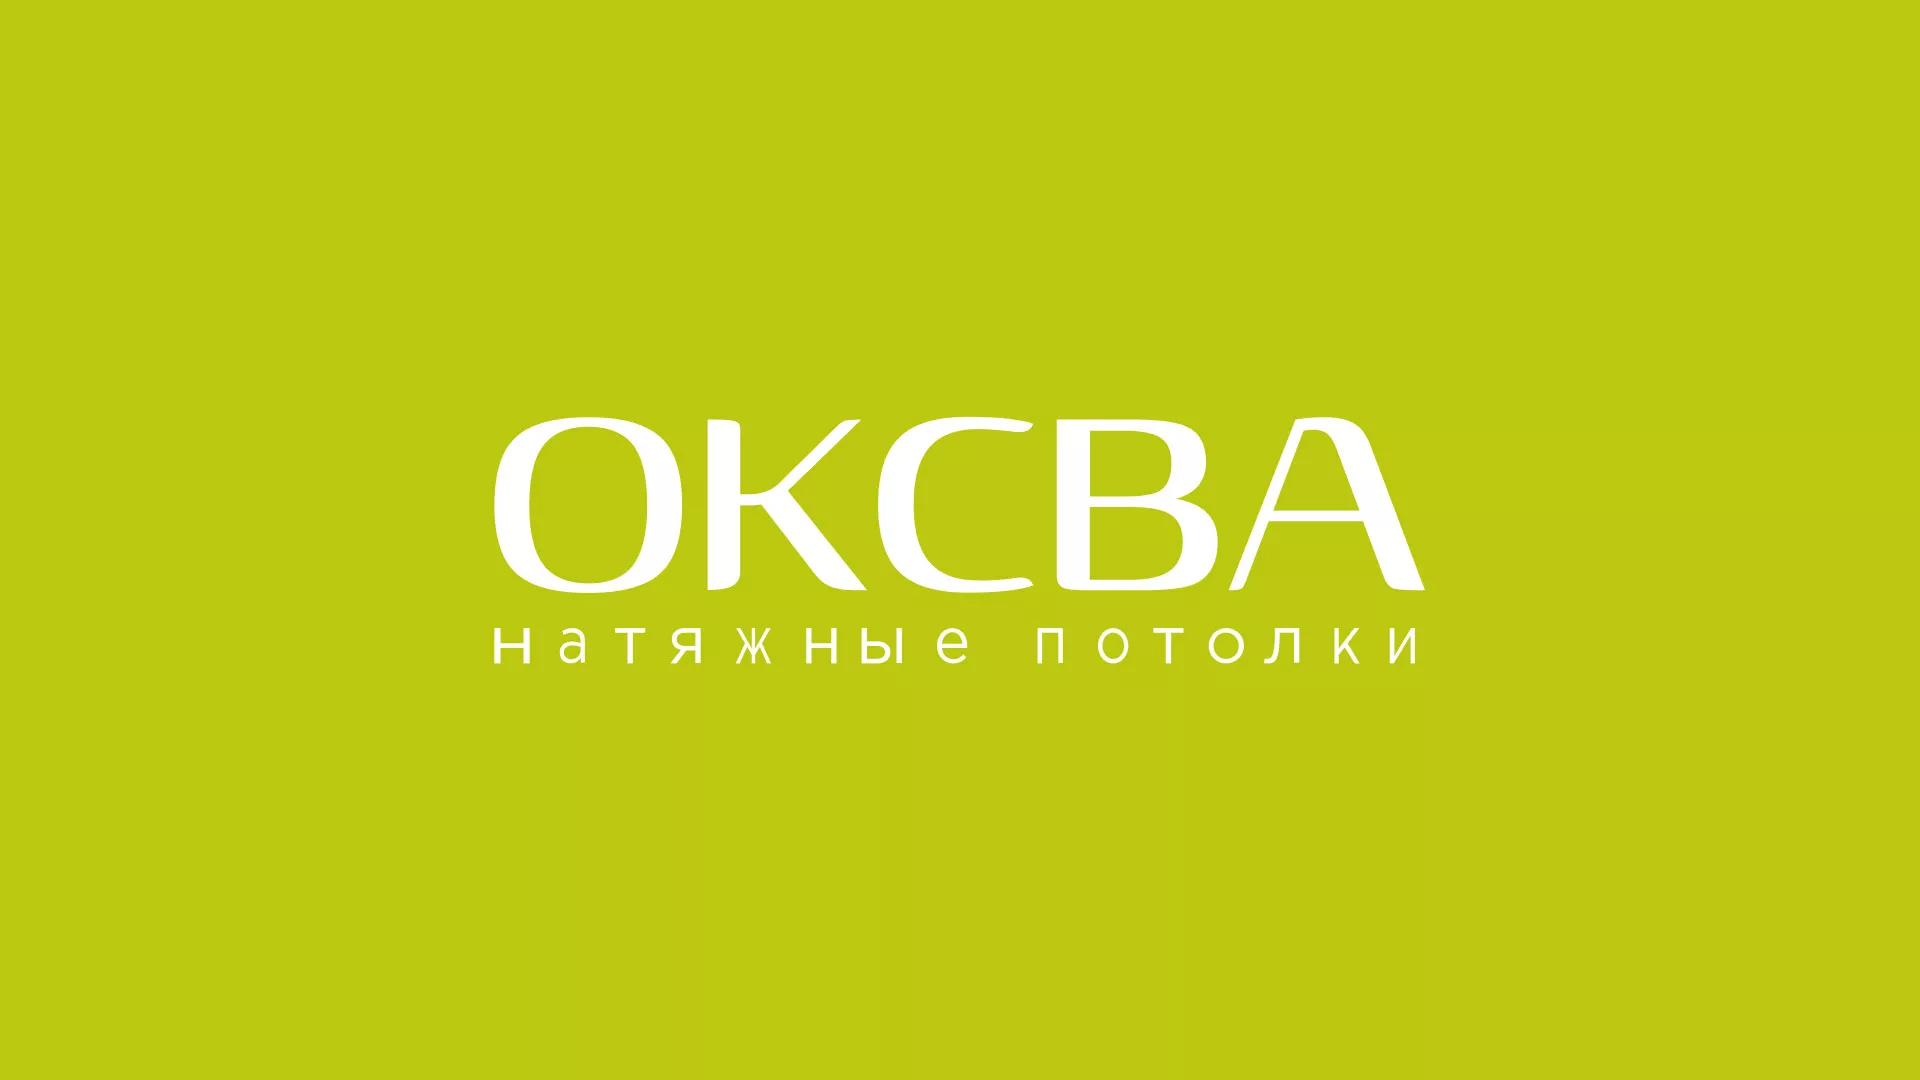 Создание сайта по продаже натяжных потолков для компании «ОКСВА» в Орехово-Зуево